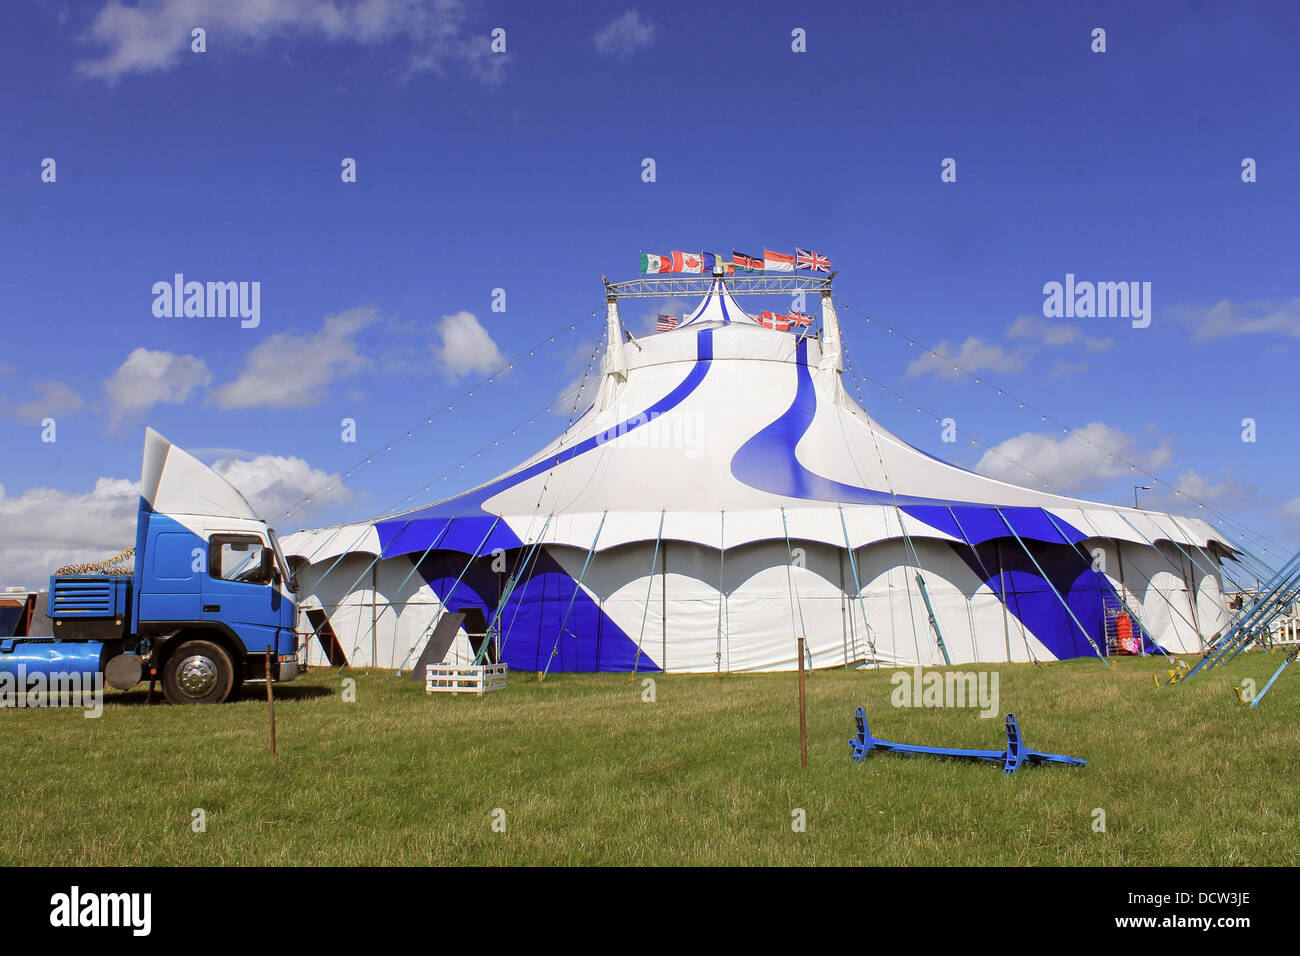 Chapiteau de cirque tente et camion, bleu et blanc. Banque D'Images